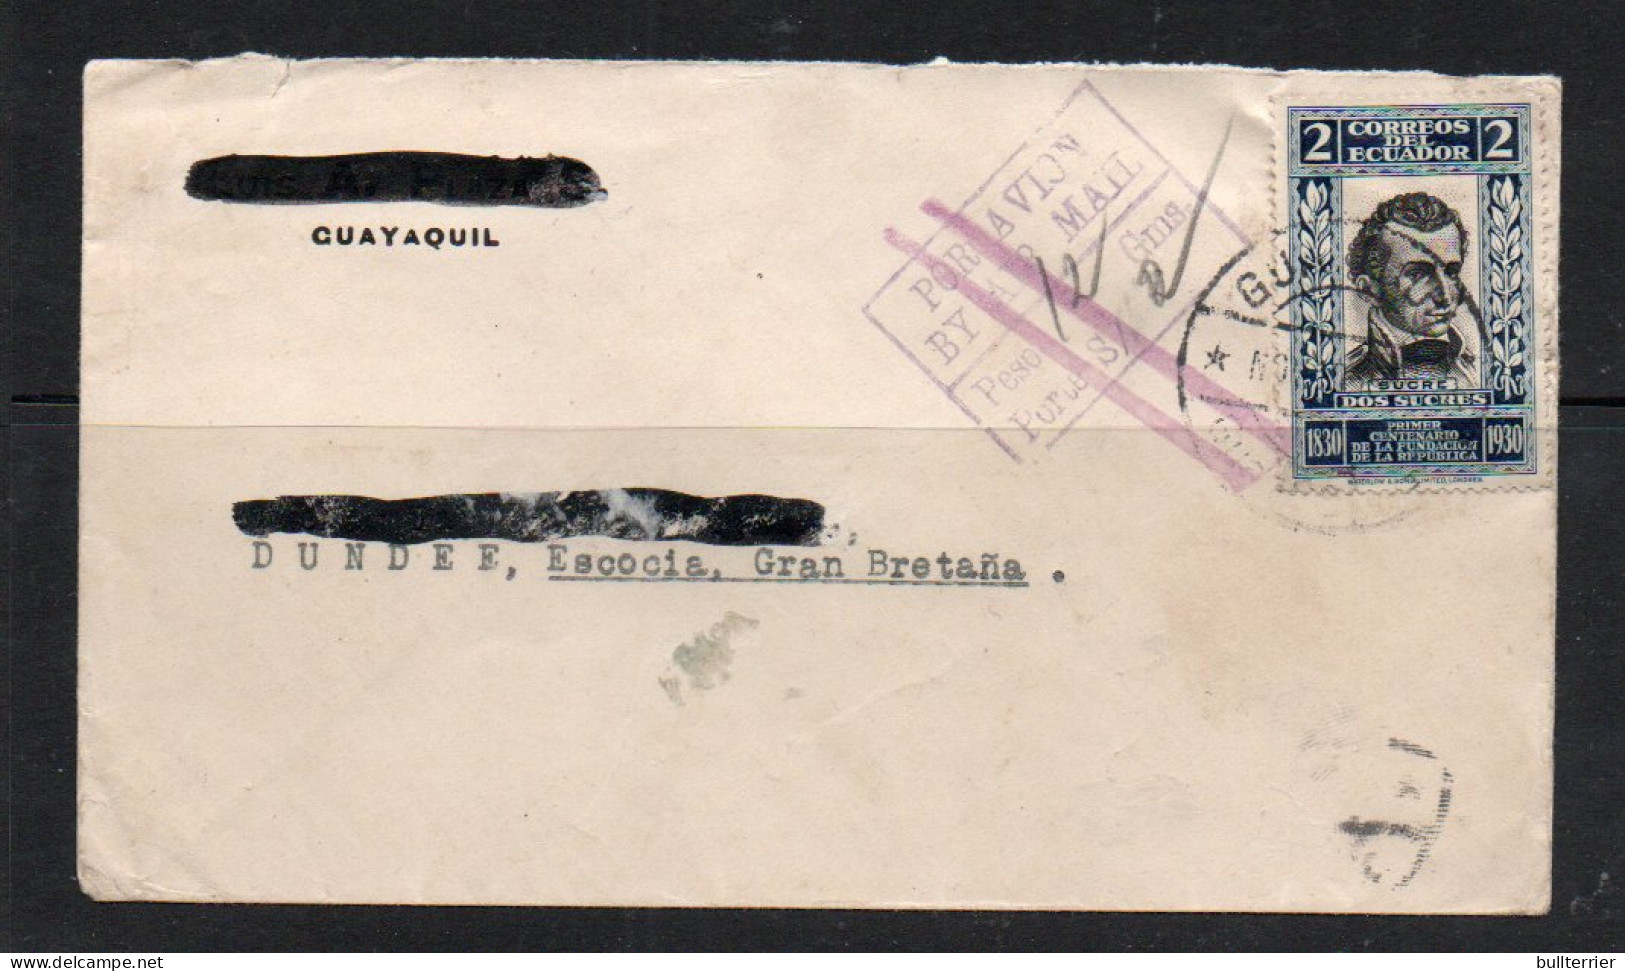 ECUADOR - 1931- AIRMAIL COVER ECUADOR TO DUNDEE, SCOTLAND  - Ecuador